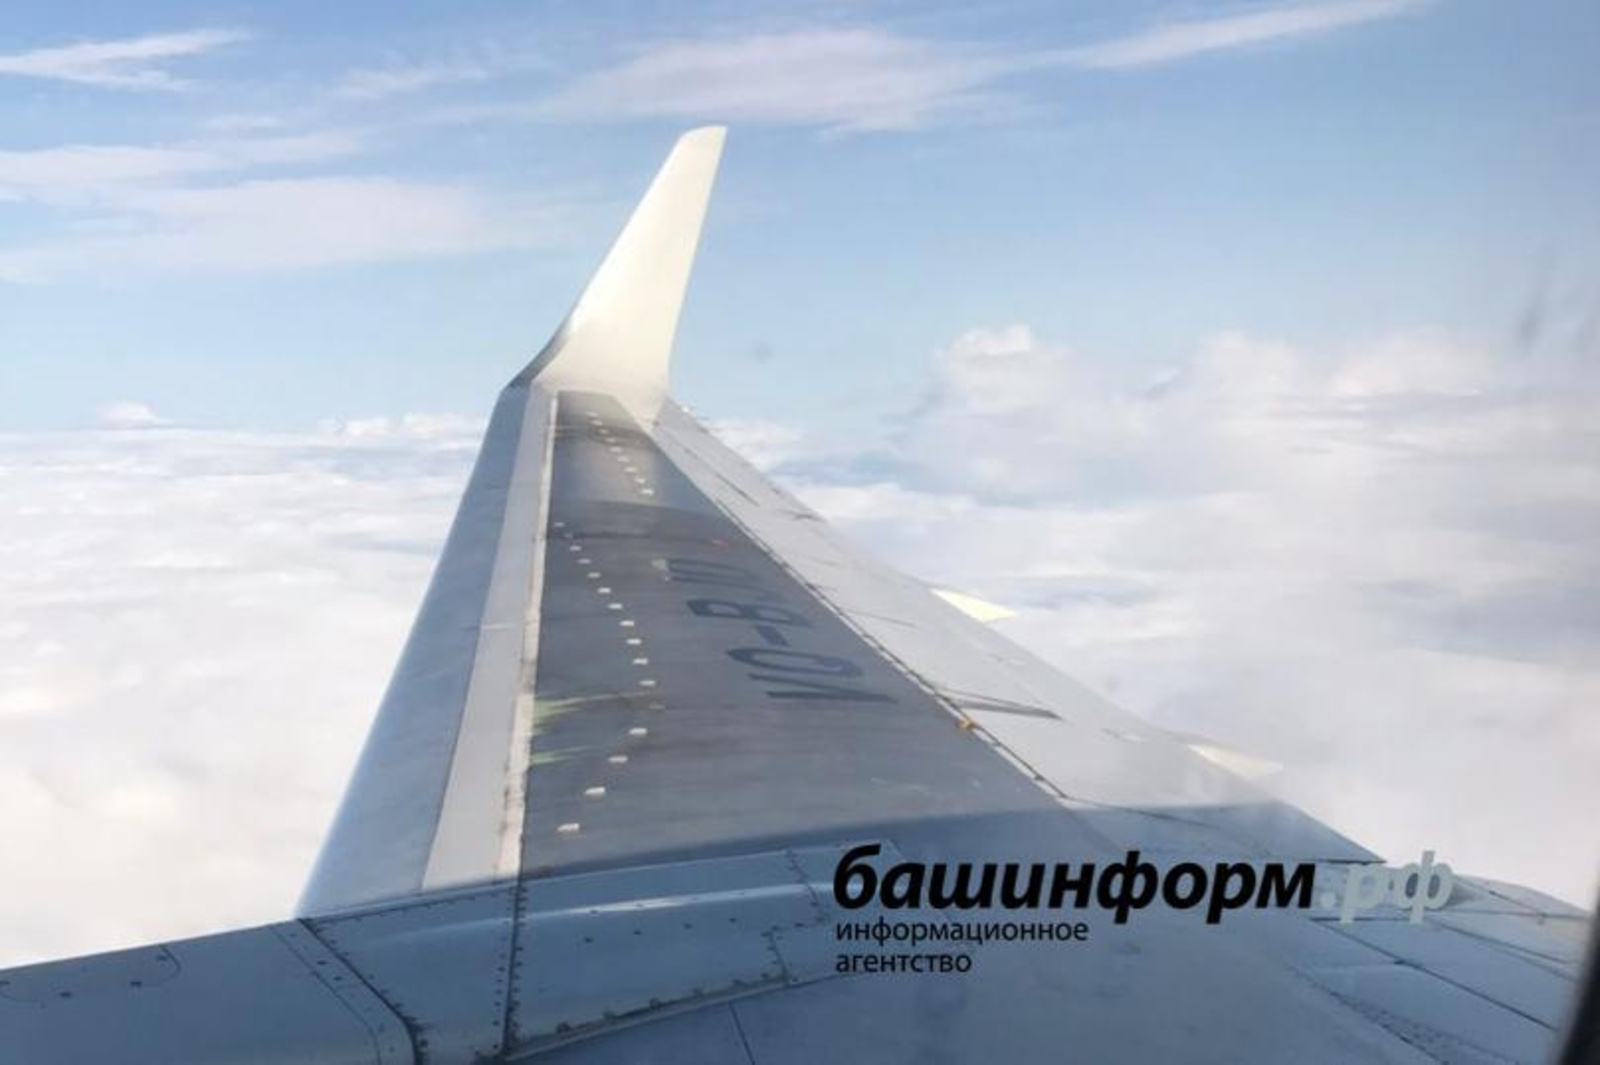 Уже в начале следующего года будут запущены чартерные авиапрограммы из Нур-Султана в Уфу.